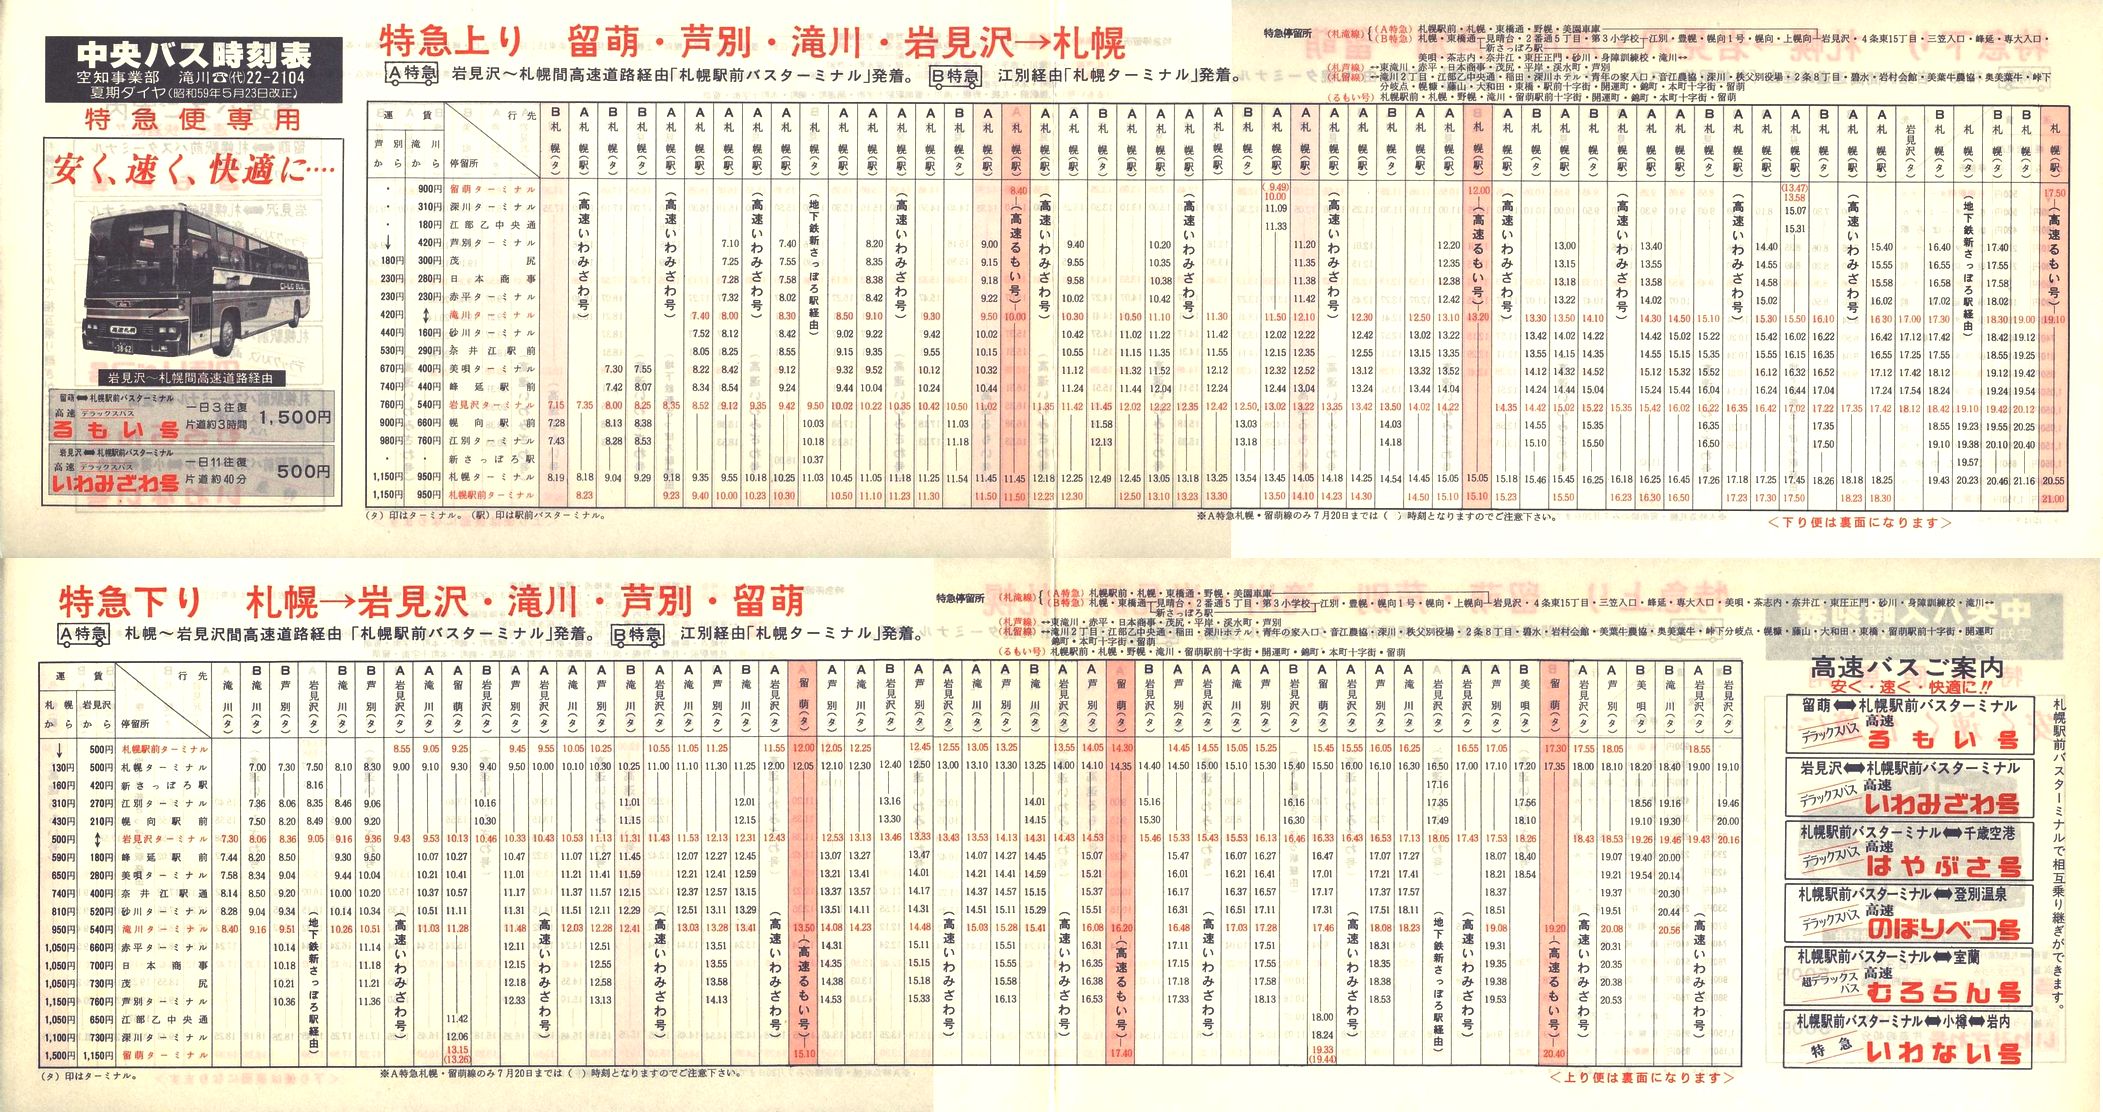 1984-05-23改正_北海道中央バス(空知)_特急便時刻表